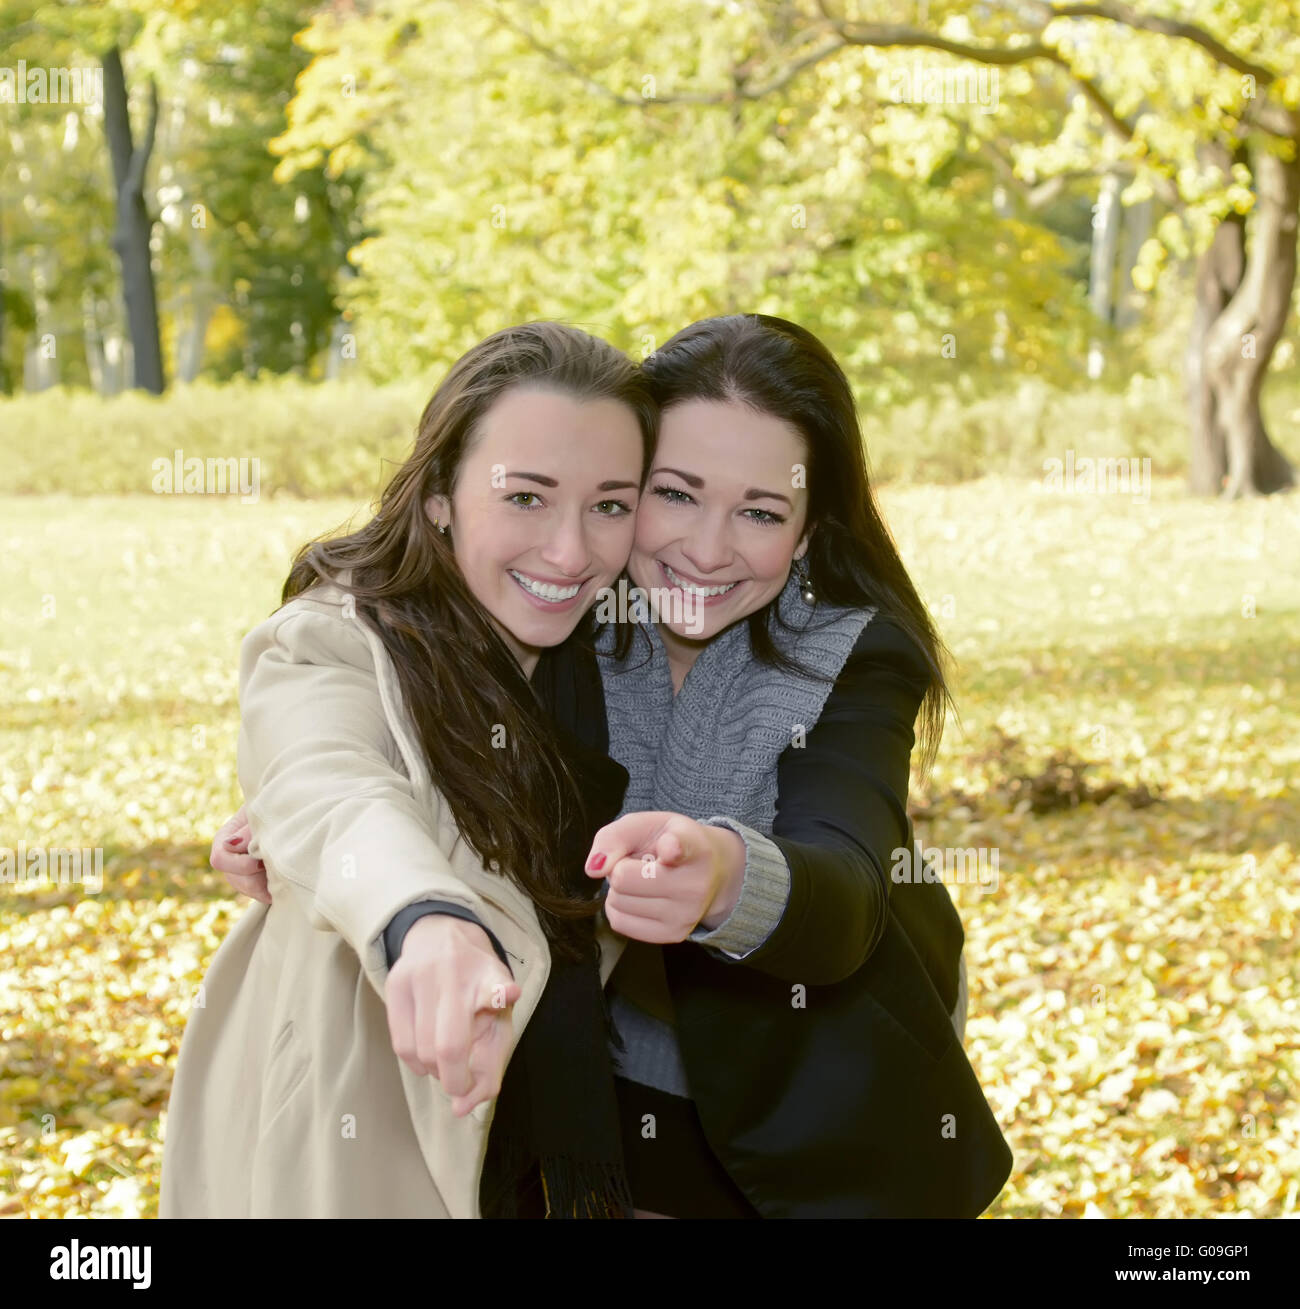 happy sisters Stock Photo